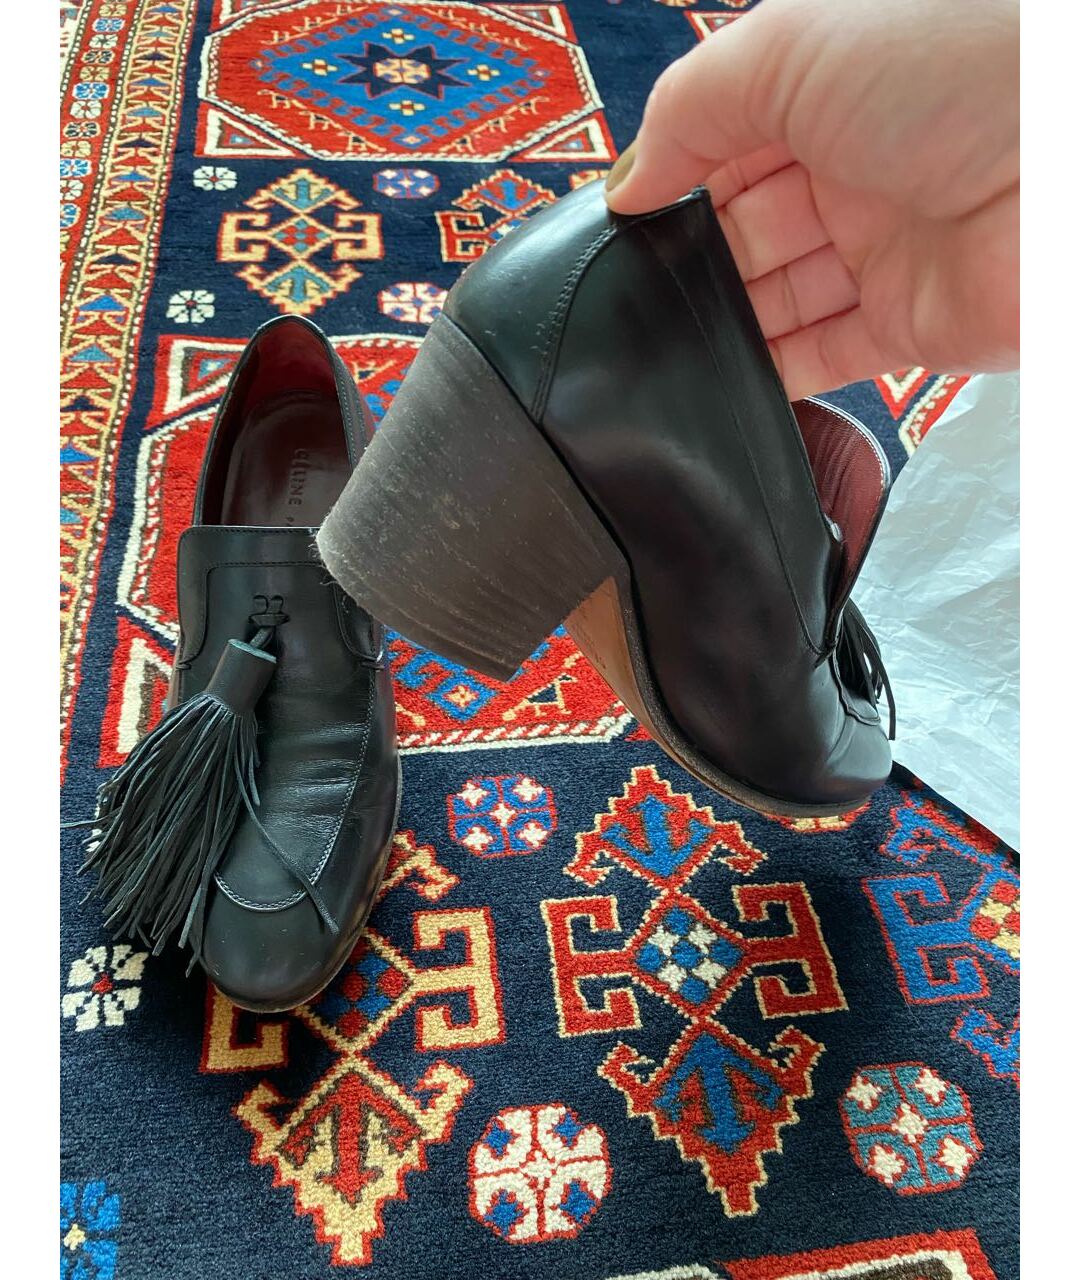 CELINE PRE-OWNED Черные кожаные туфли, фото 2